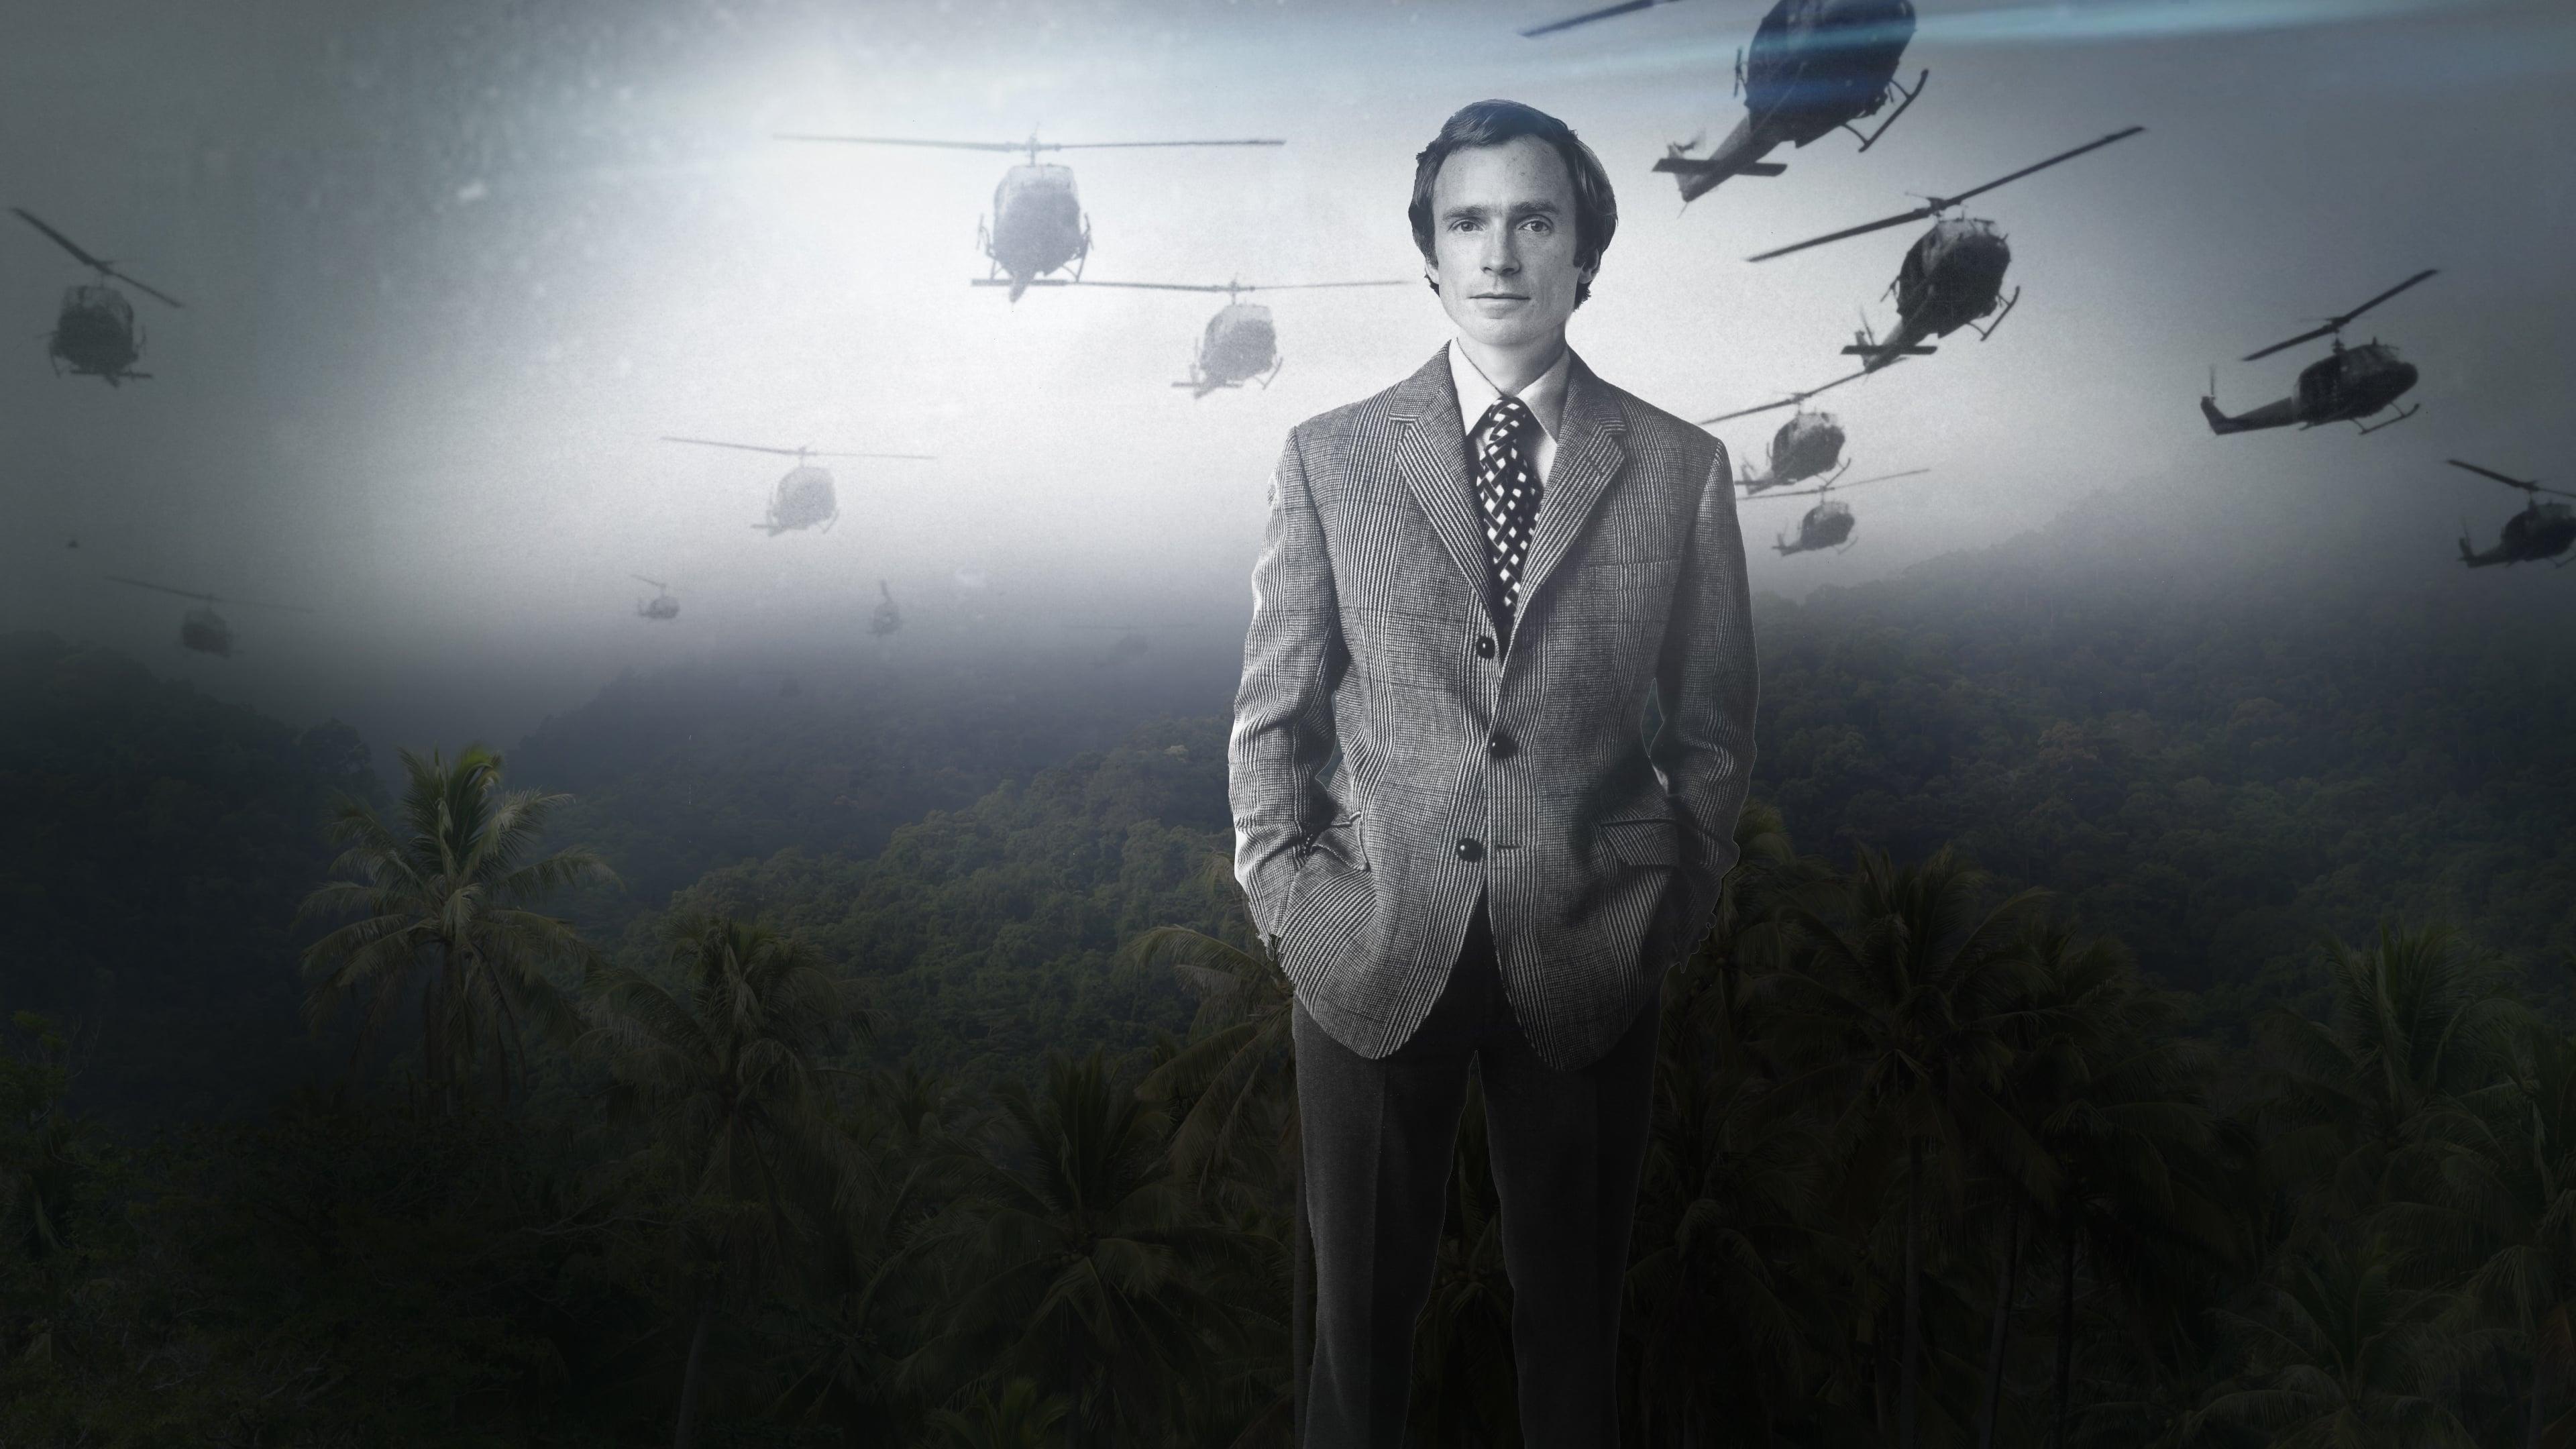 Dick Cavett's Vietnam backdrop